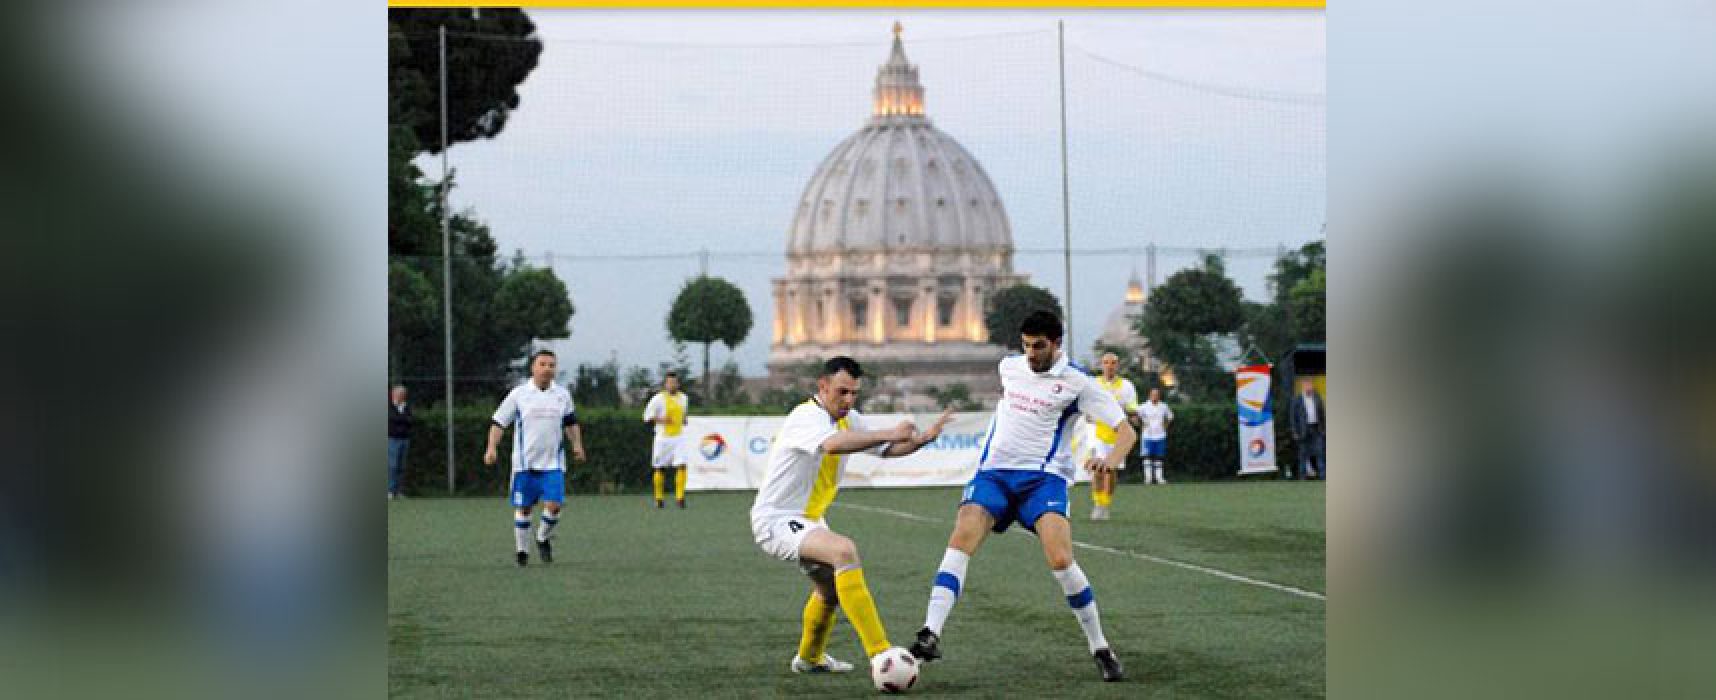 Il Don Uva Calcio dal Papa per i cinquant’anni della fondazione